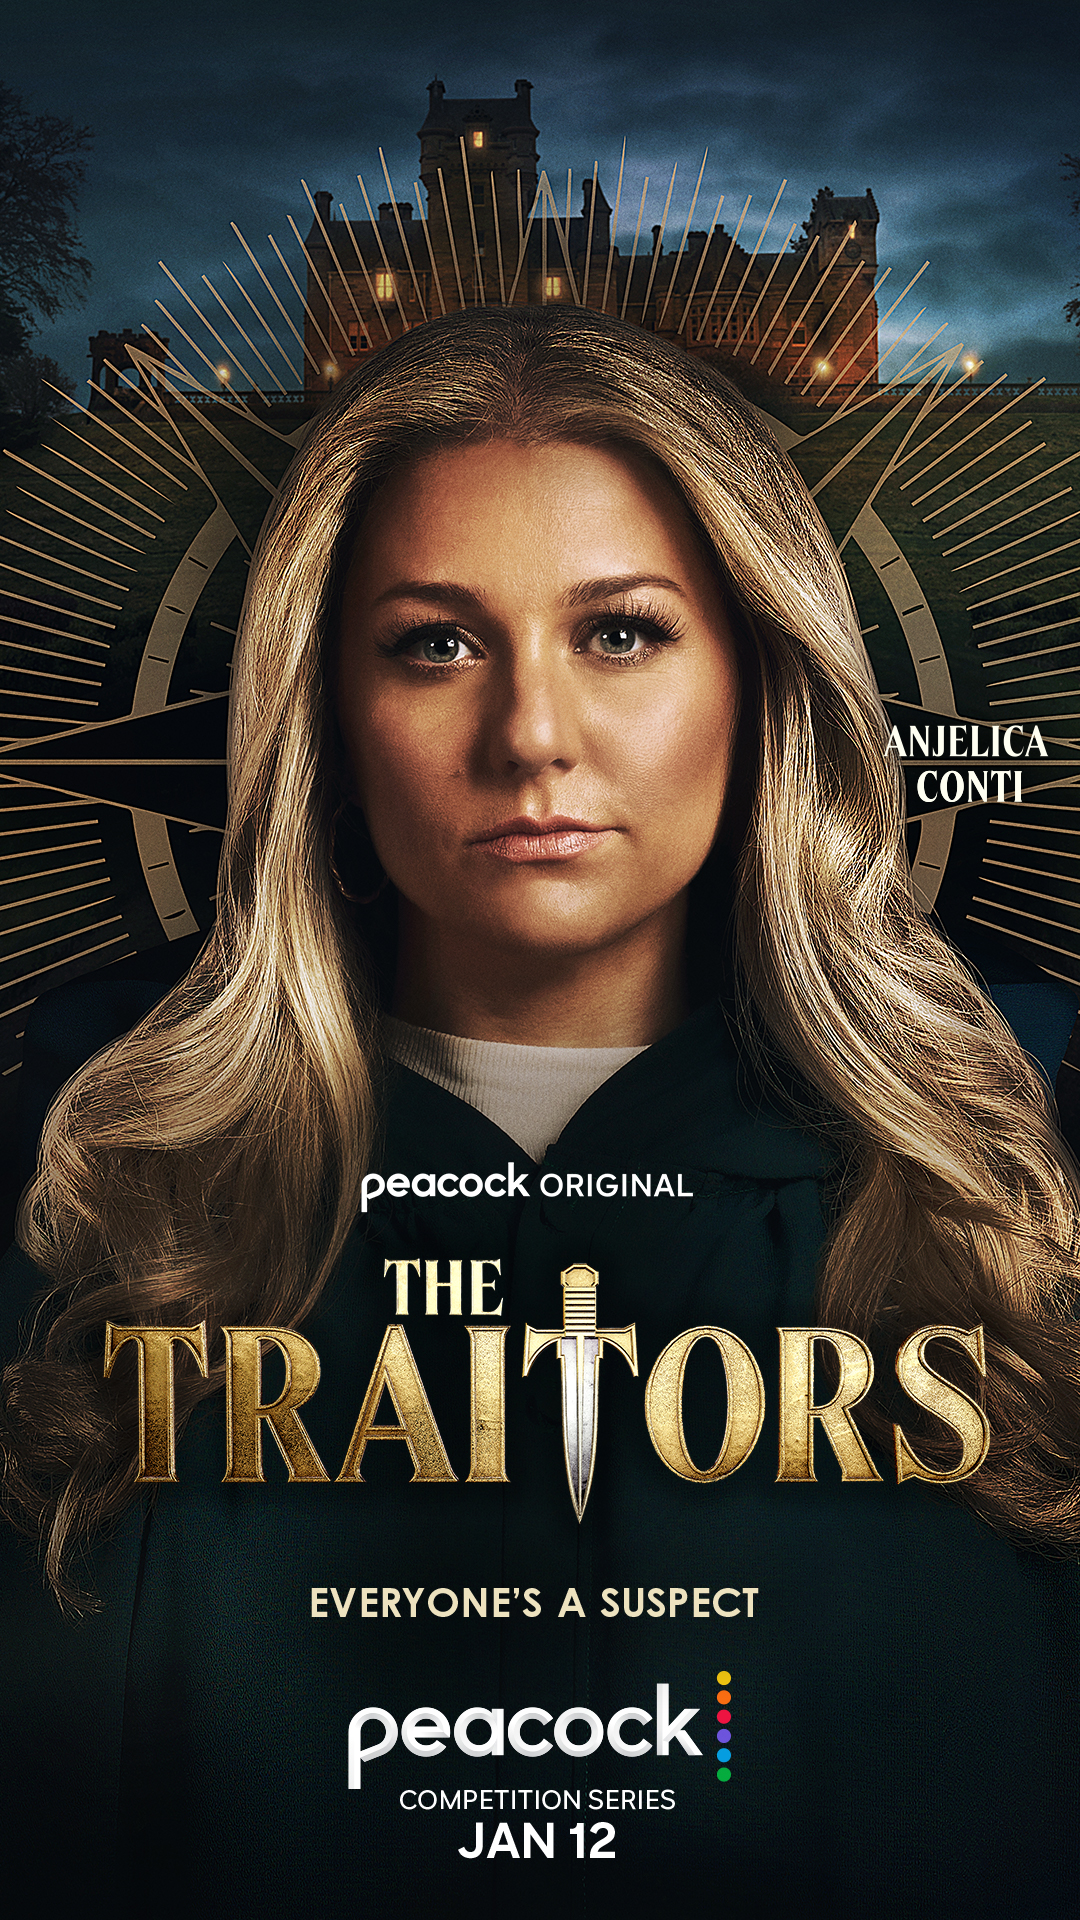 Anjelica Conti for 'The Traitors'